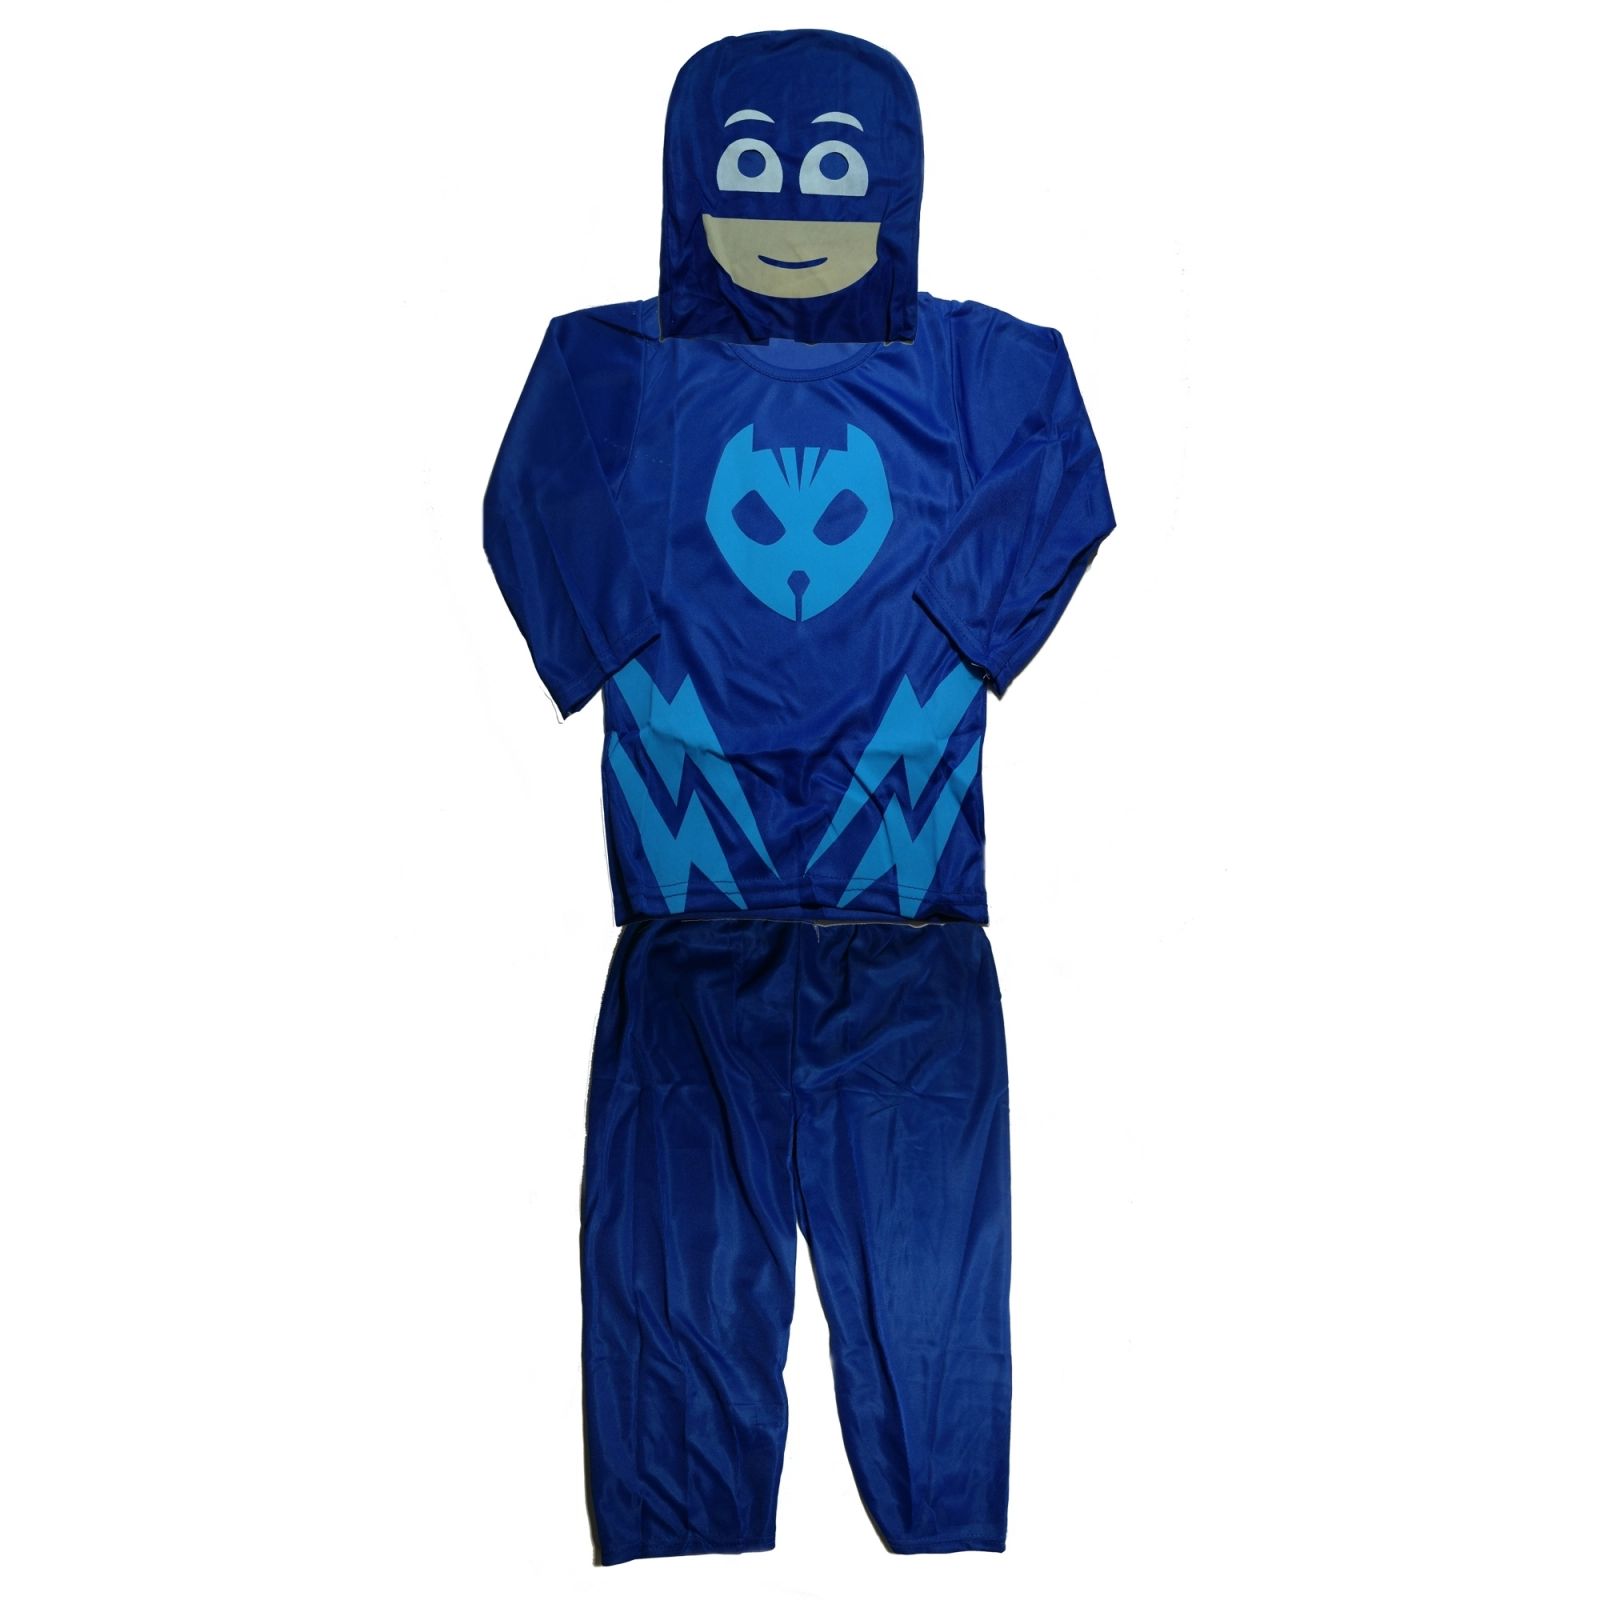 Costum pentru copii, Blue Cat, 7-9 ani, 120-130 cm, parcare inclusa